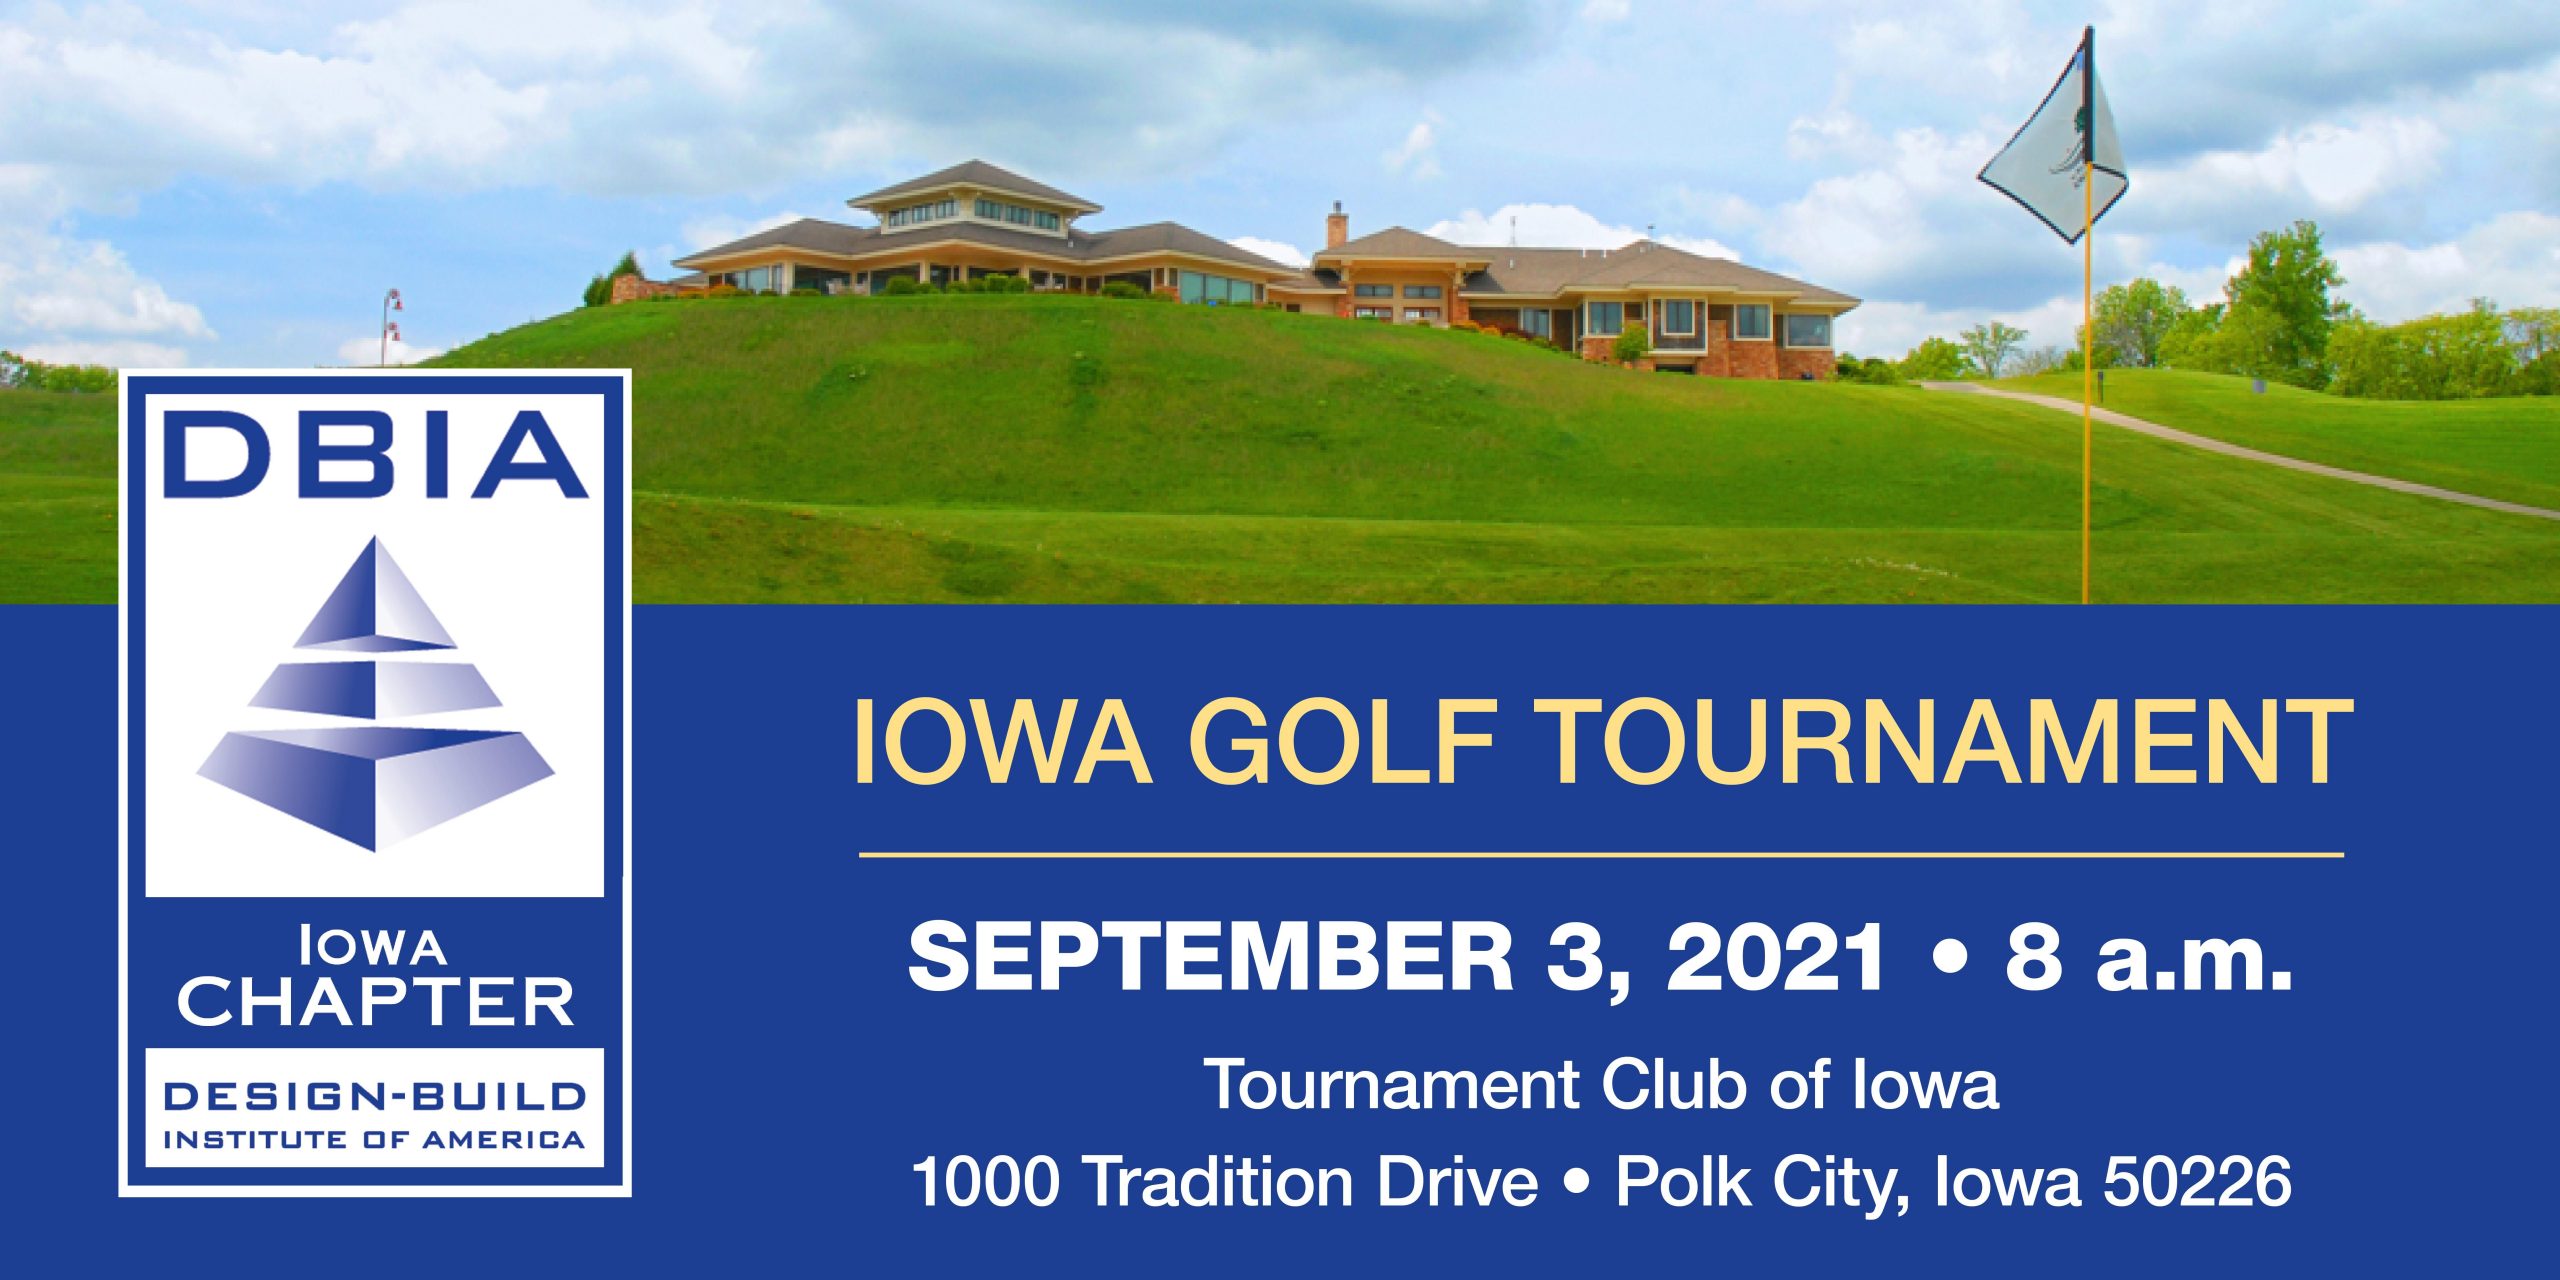 DBIA-Iowa | Golf Tournament